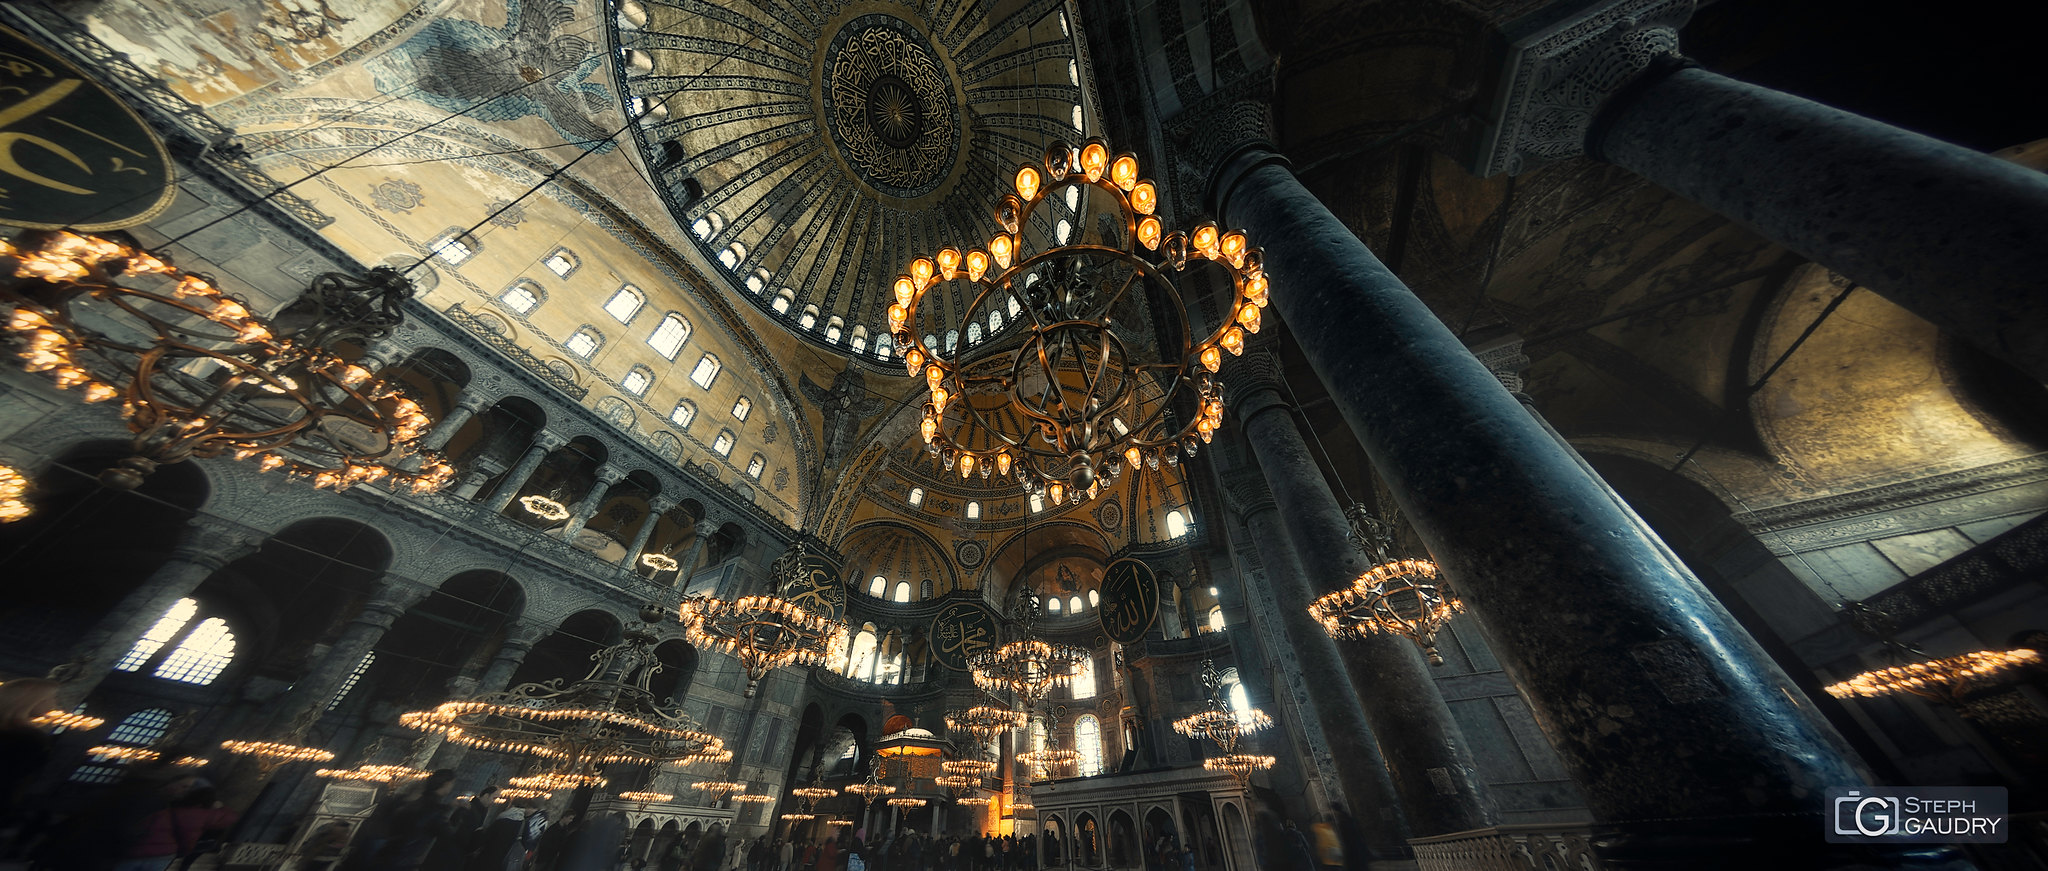 Istanbul / Istanbul, Hagia Sophia